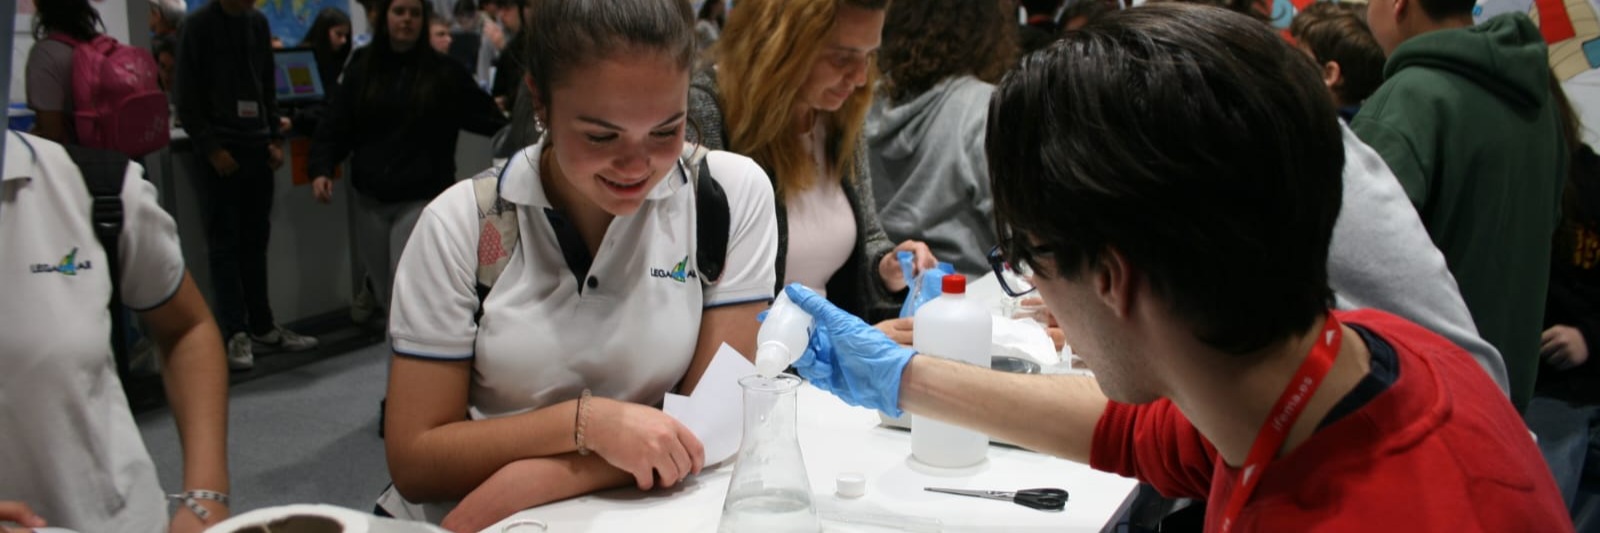 La experiencia en la XII Feria de la Ciencia de Madrid ha sido increíble para nuestros alumnos